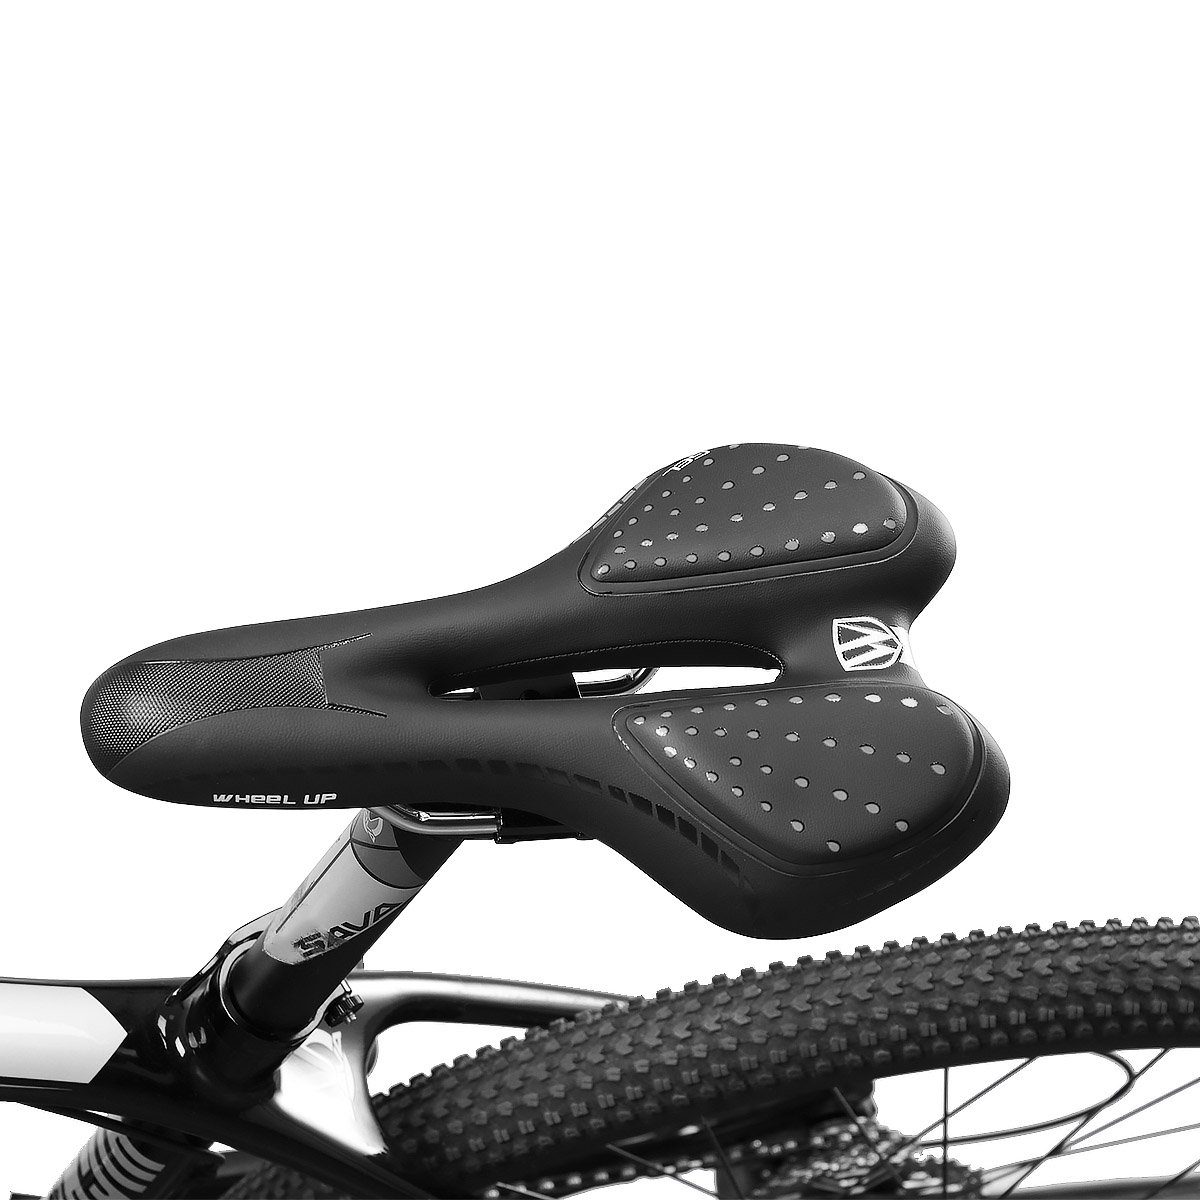 MidGard wasserabweisend GEL ergonomische Fahrradsattel Fahrradsitz, Sattel, Unisex Fahrrad